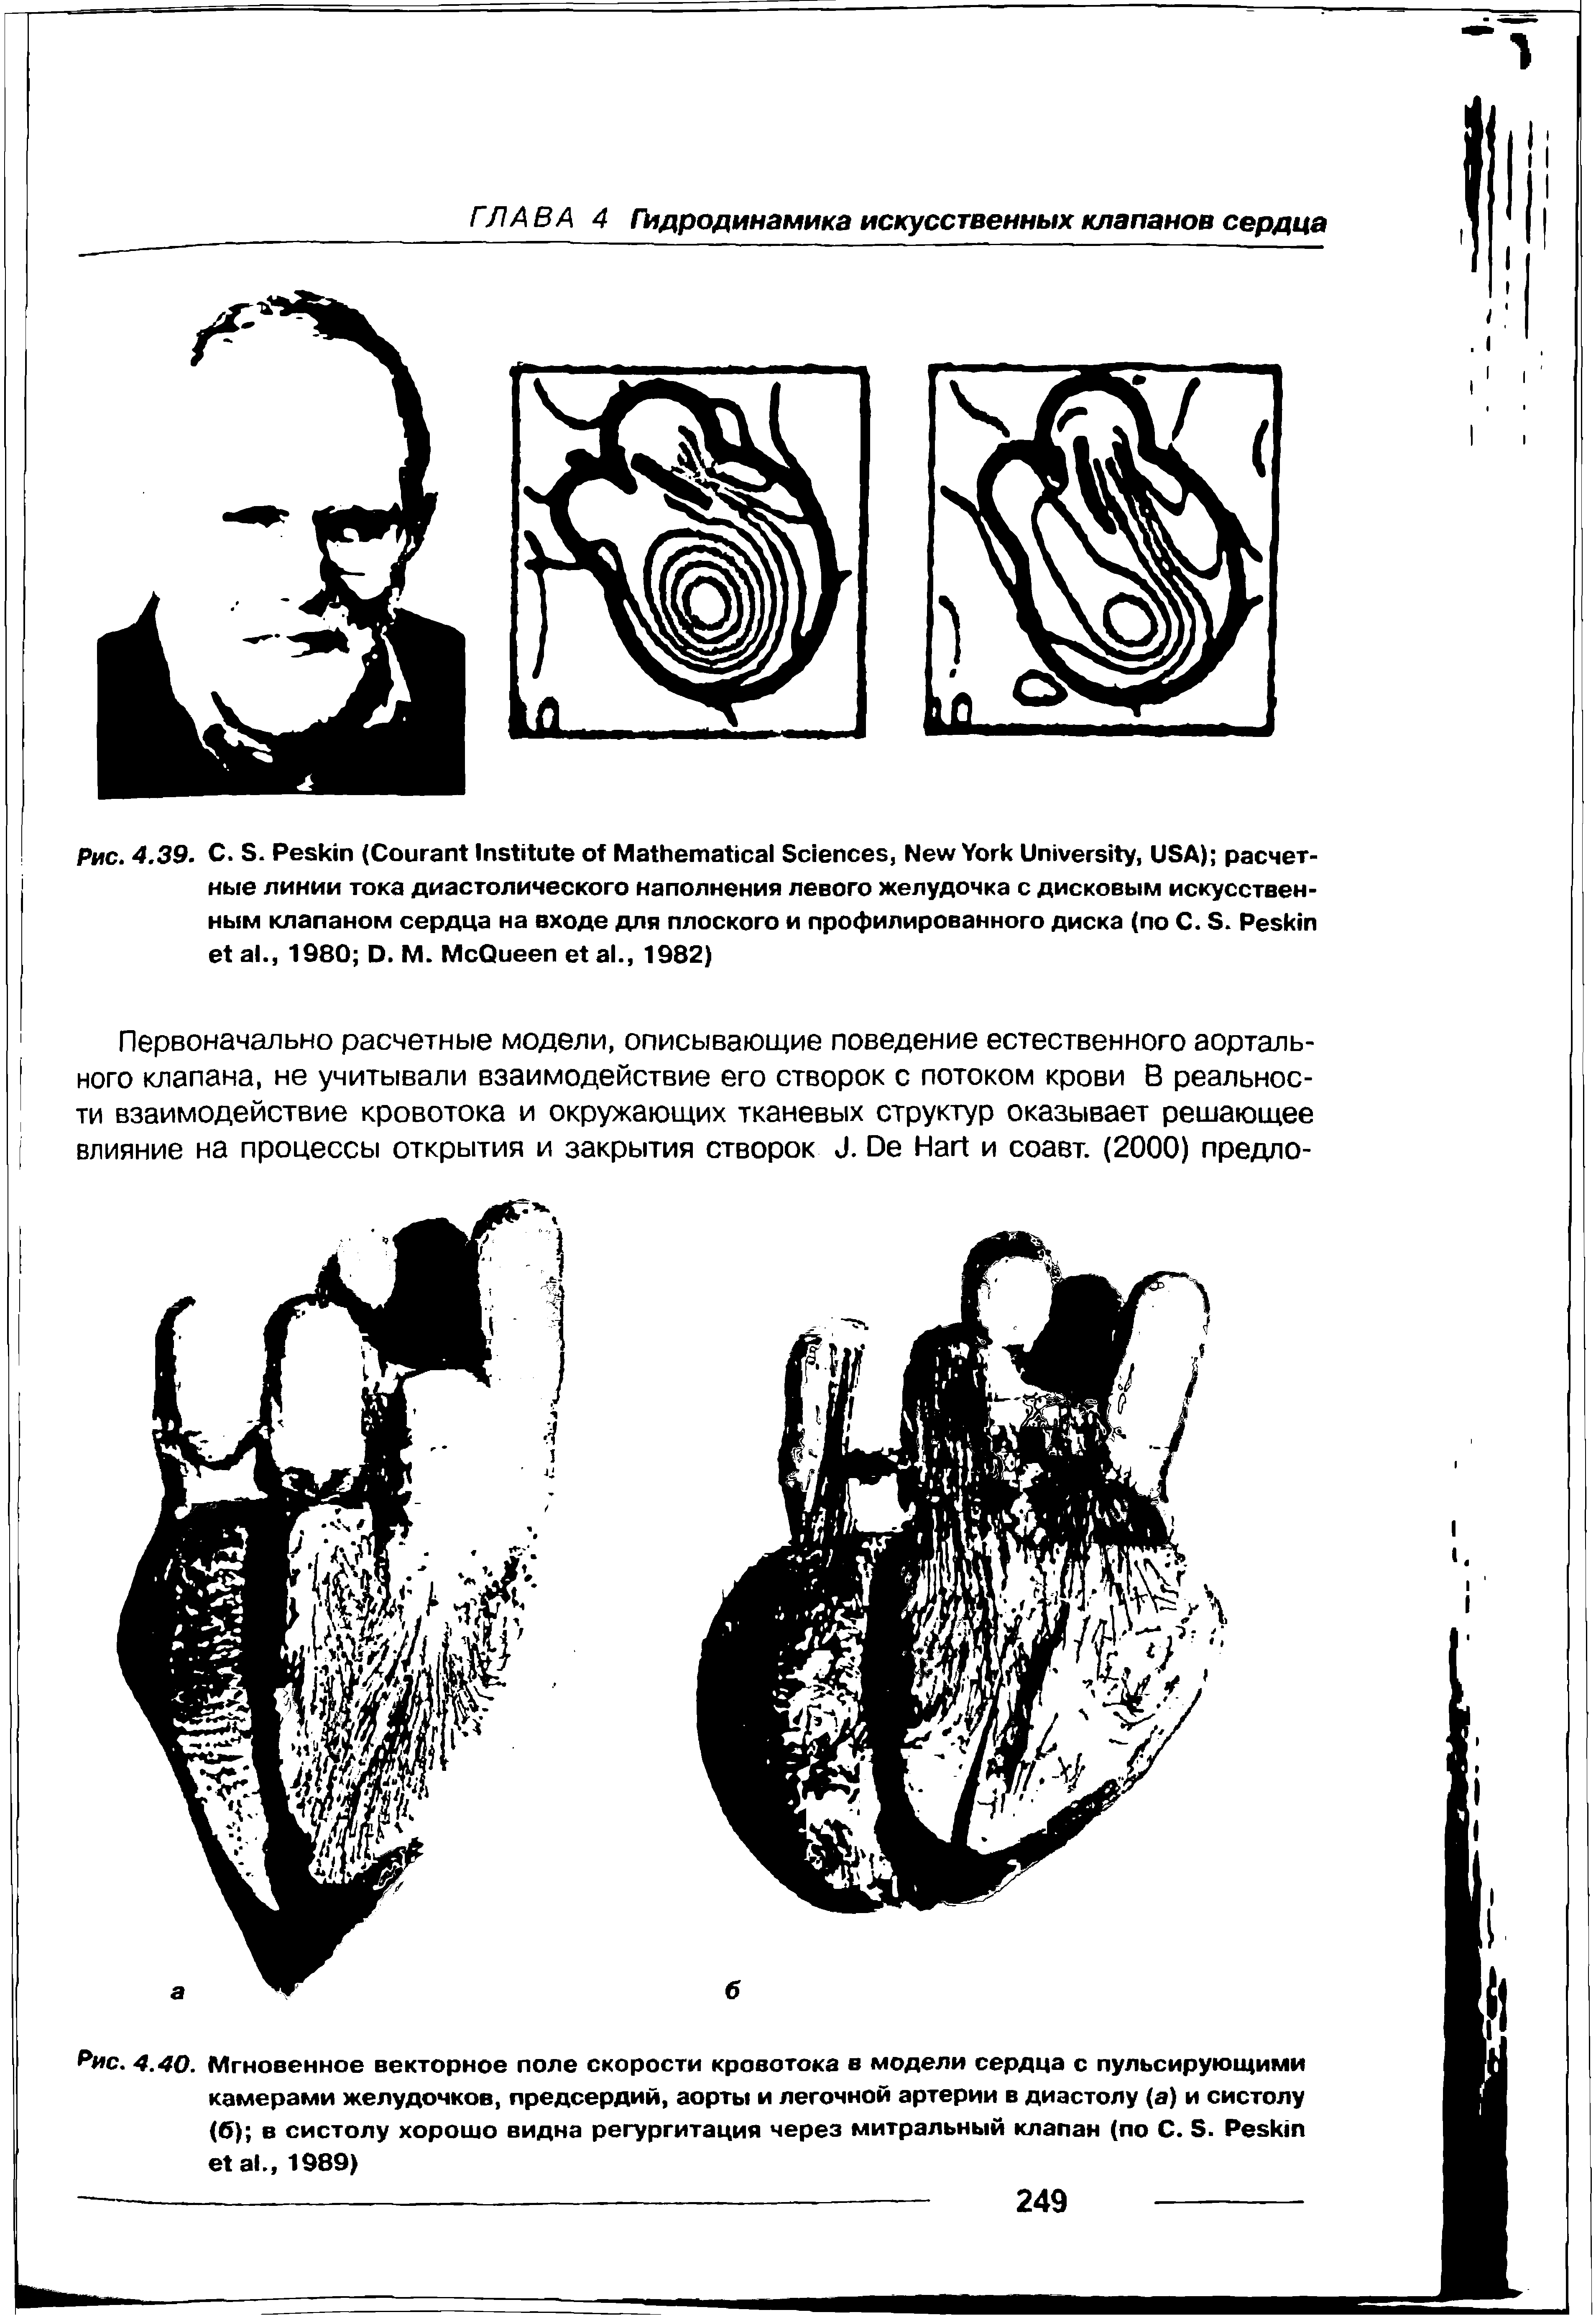 Рис. 4.40. Мгновенное векторное поле скорости кровотока в модели сердца с пульсирующими камерами желудочков, предсердий, аорты и легочной артерии в диастолу (а) и систолу (б) в систолу хорошо видна регургитация через митральный клапан (по С. Б. Ре б кт е1 ак, 1989)...